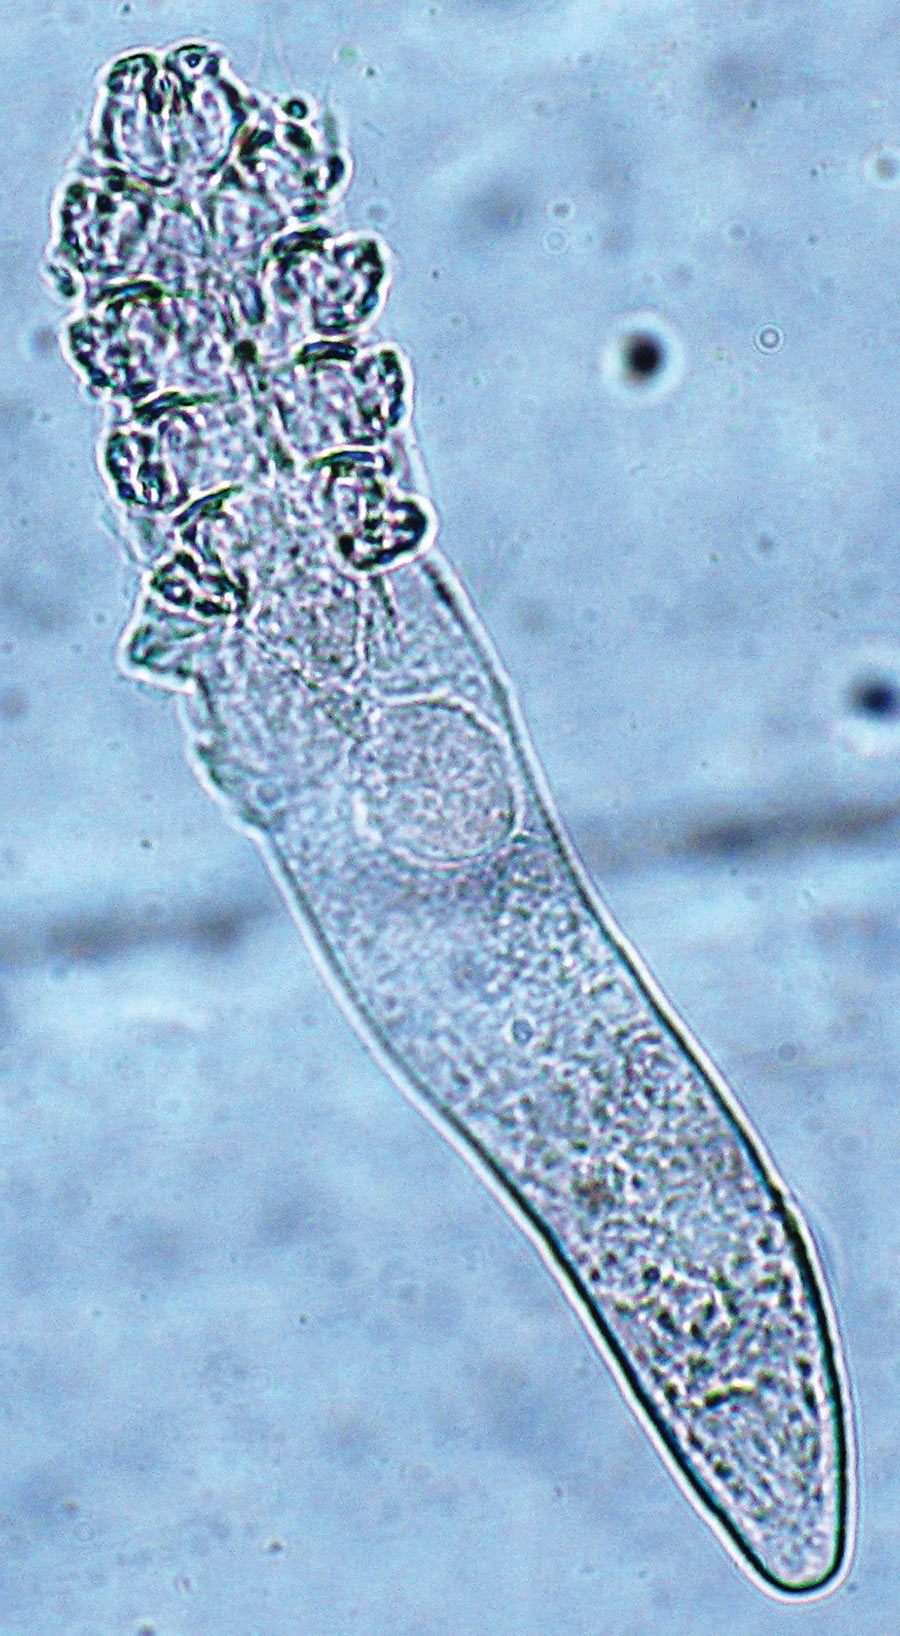 1. Dojrzała postać Demodex folliculorum (pow. 40x)